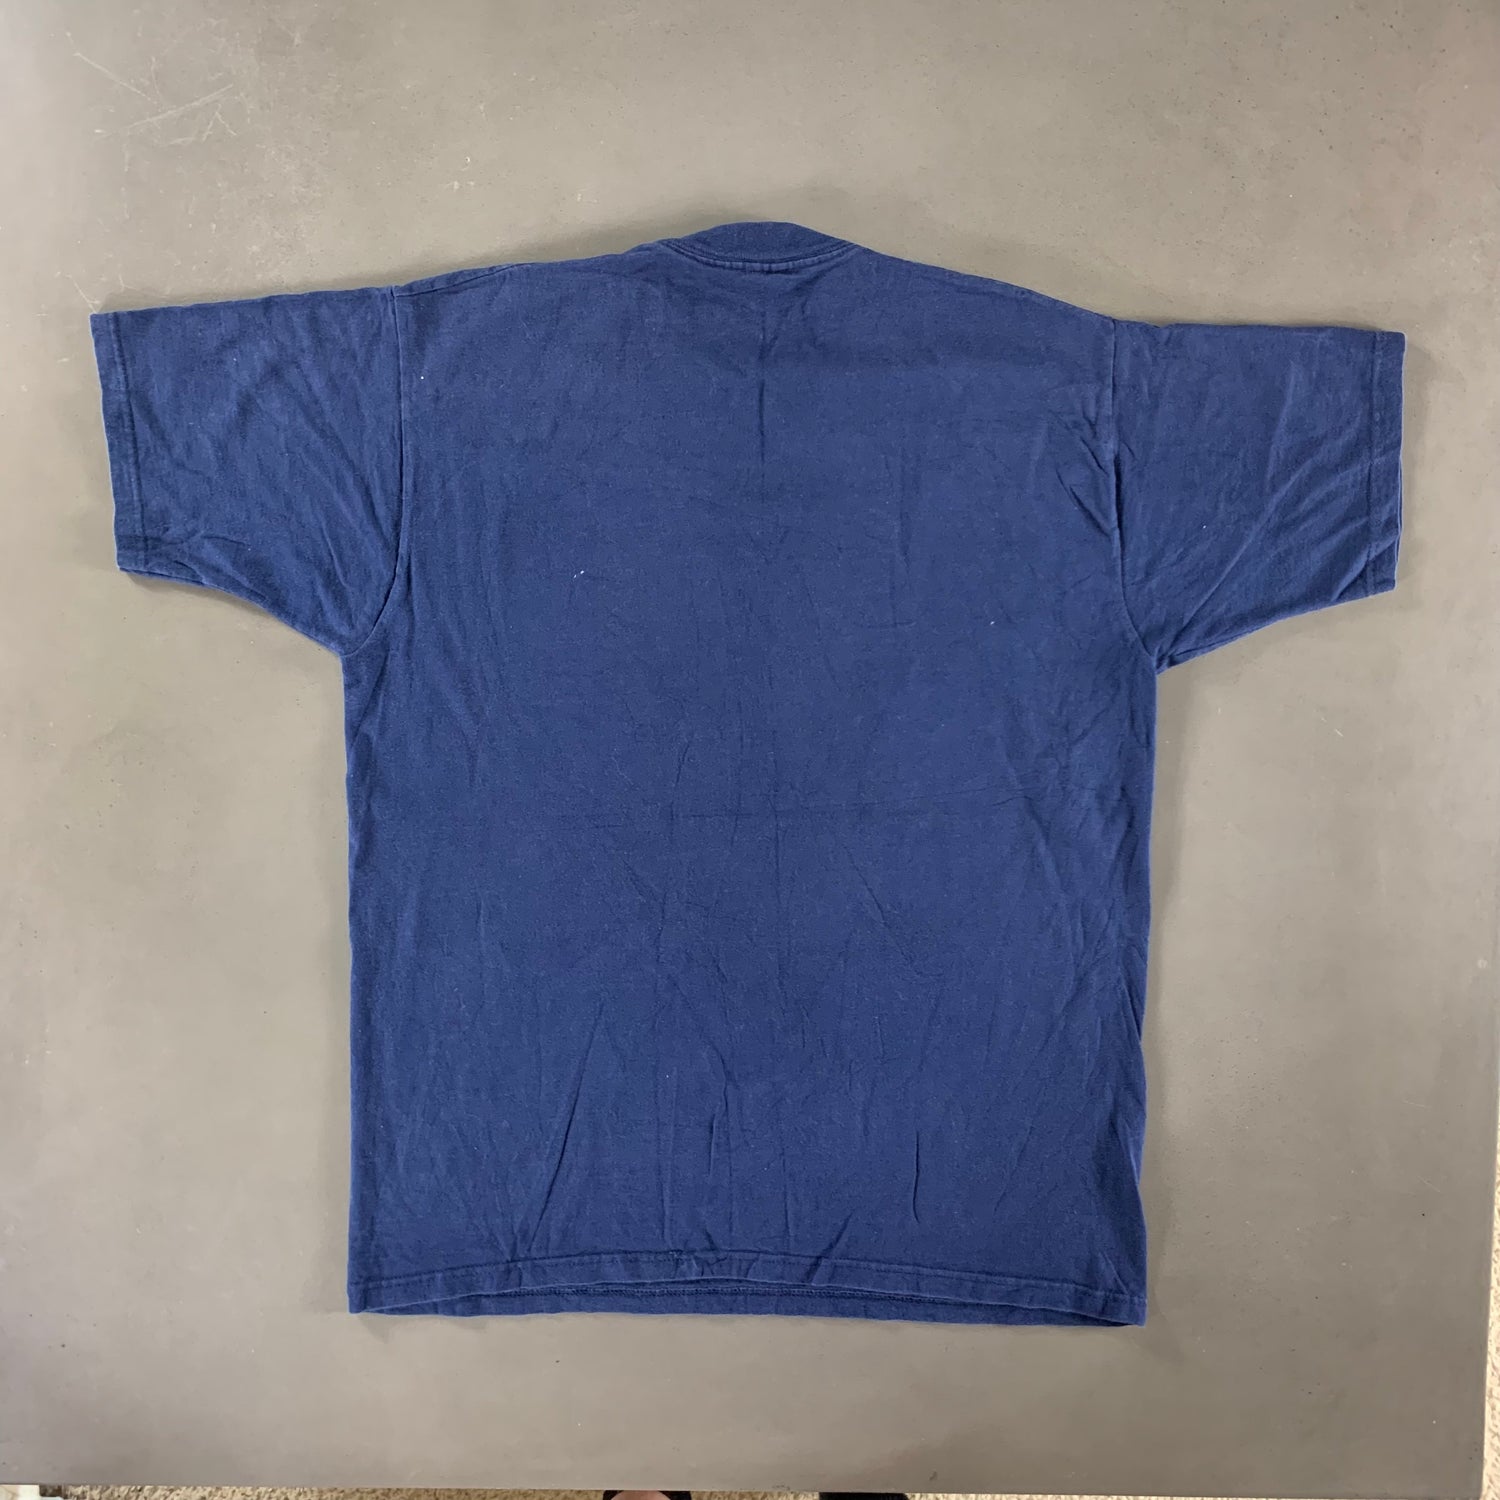 Vintage 1990s T-shirt size XL